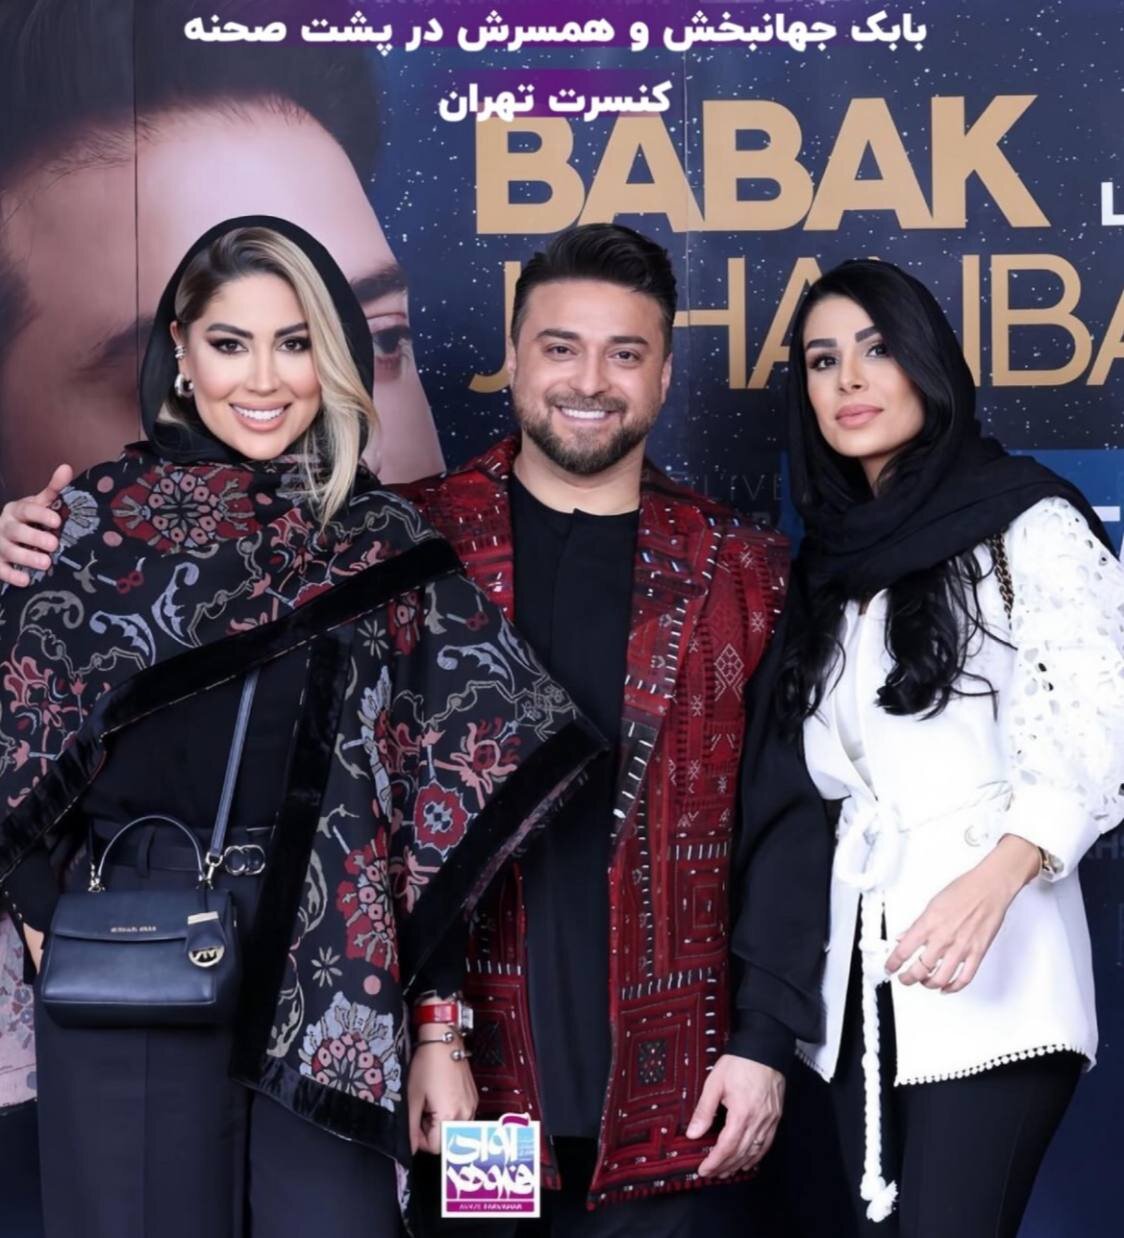 عکس | تصاویر جالب بابک جهانبخش و همسرش در پشت صحنه کنسرت تهران